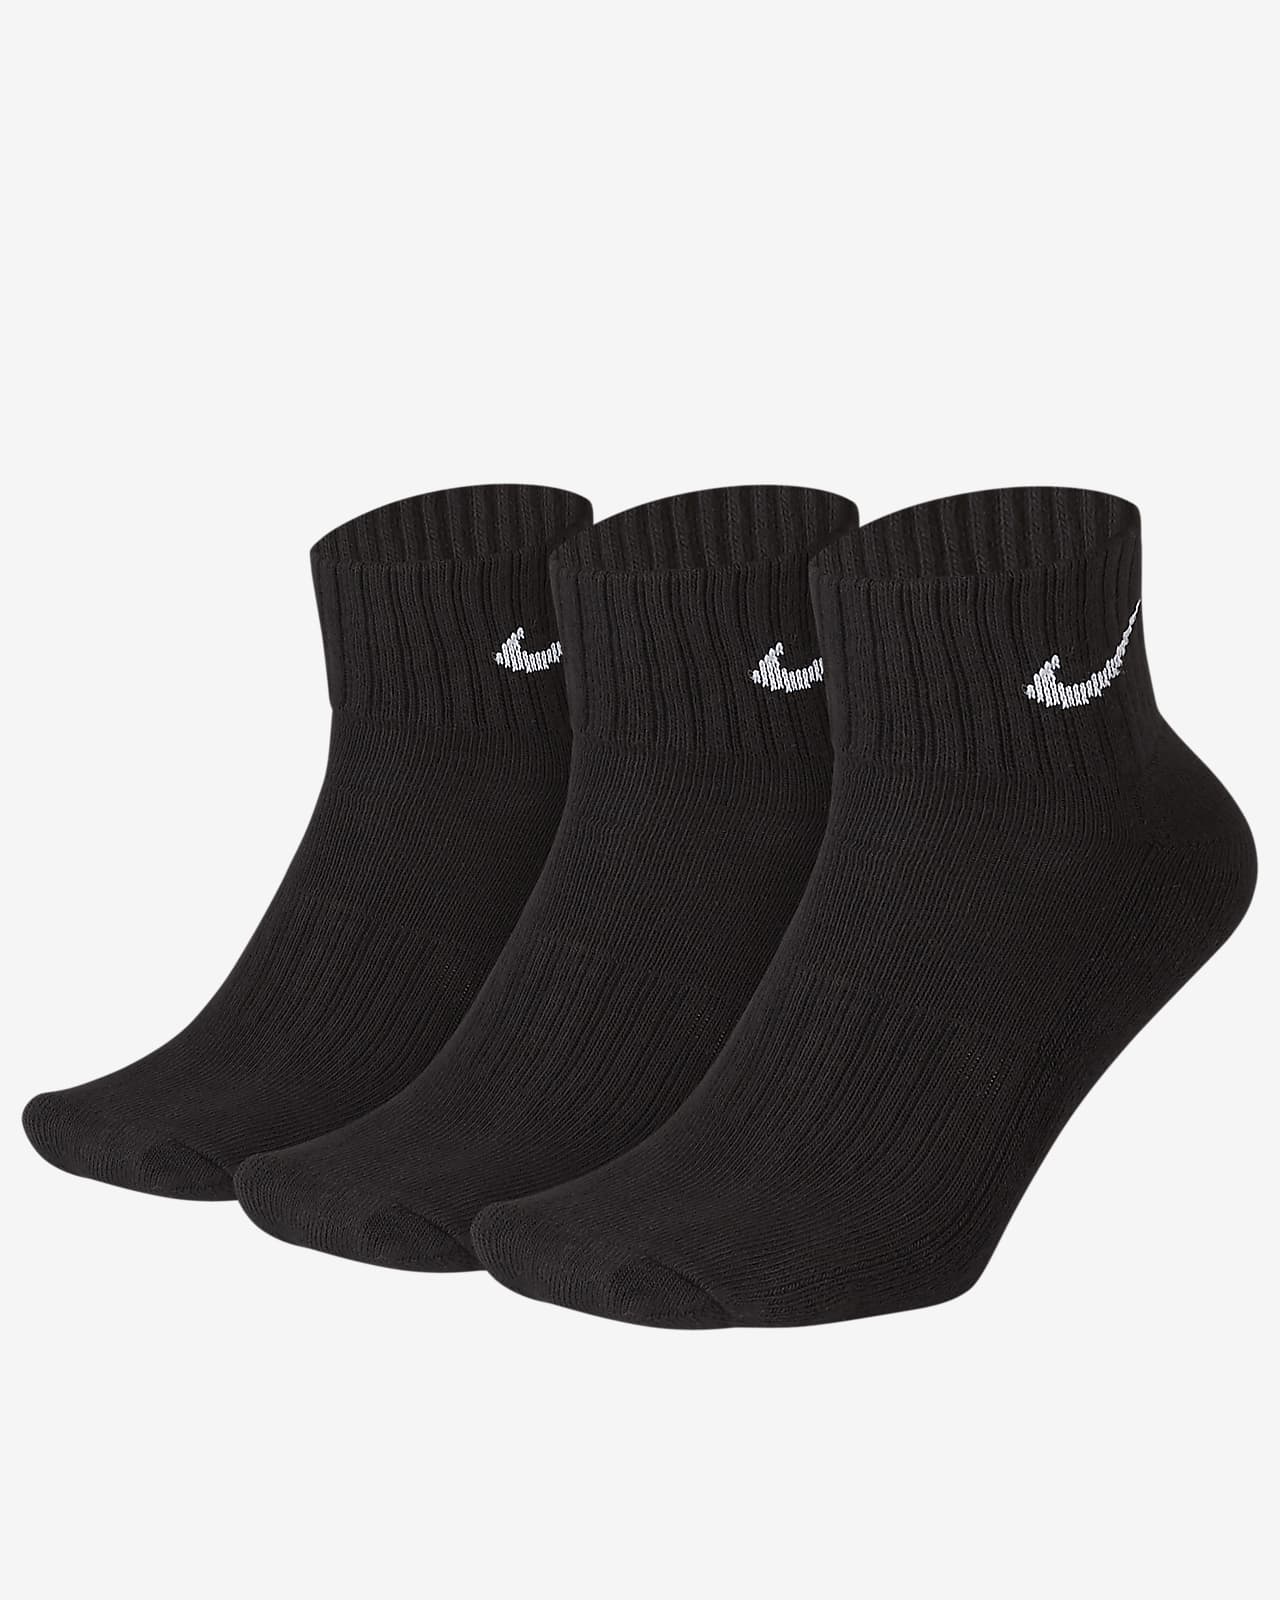 Nike gepolsterte Knöchelsocken (3 Paar)